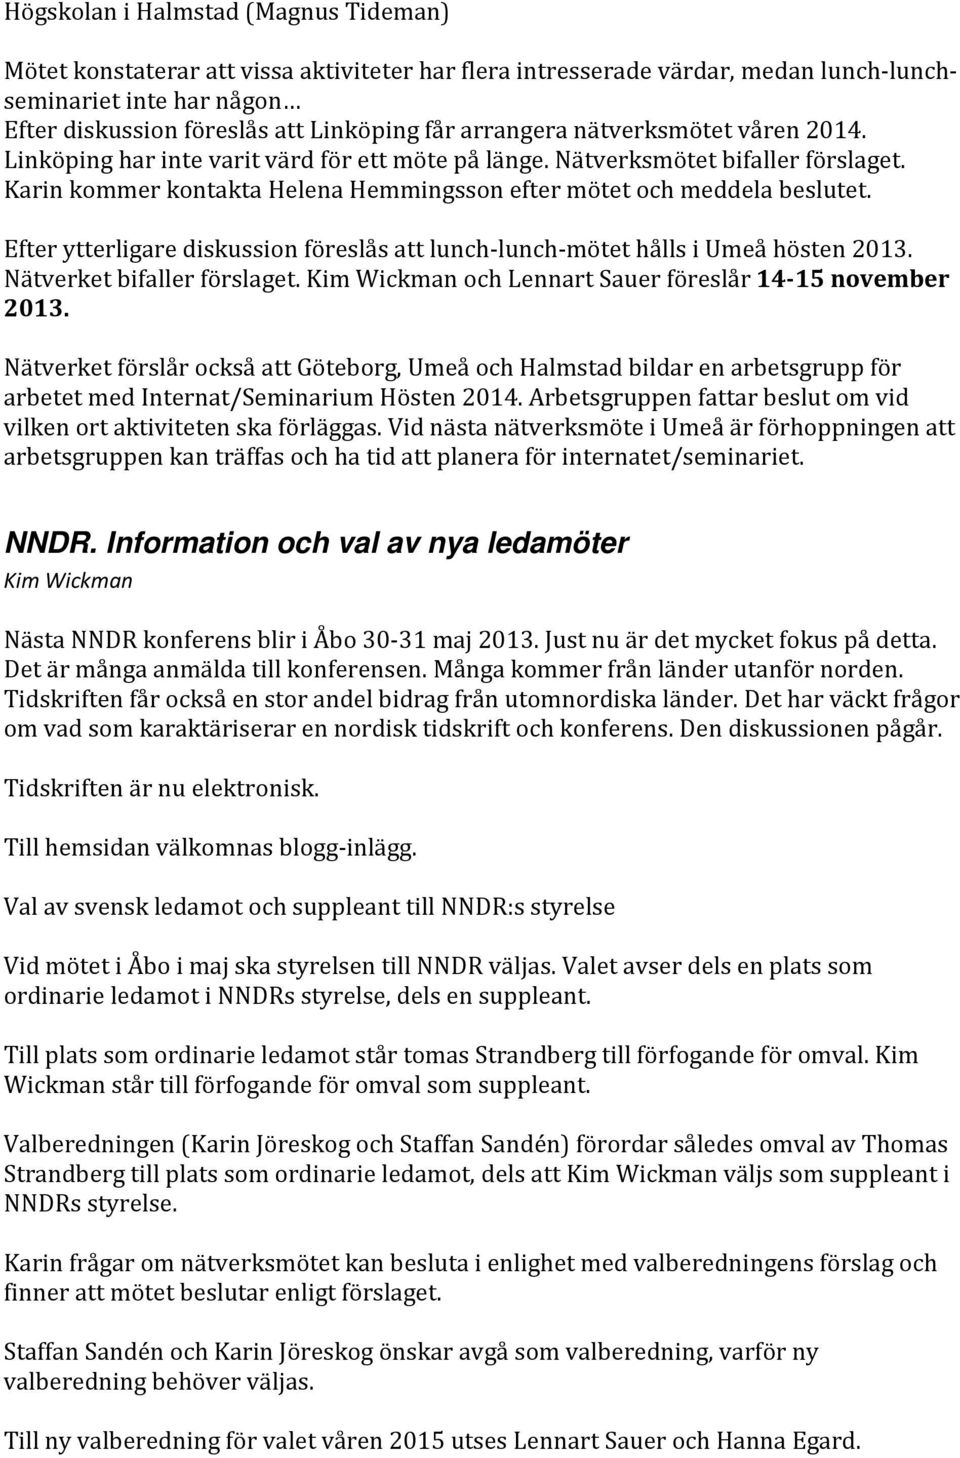 Efter ytterligare diskussion föreslås att lunch-lunch-mötet hålls i Umeå hösten 2013. Nätverket bifaller förslaget. Kim Wickman och Lennart Sauer föreslår 14-15 november 2013.